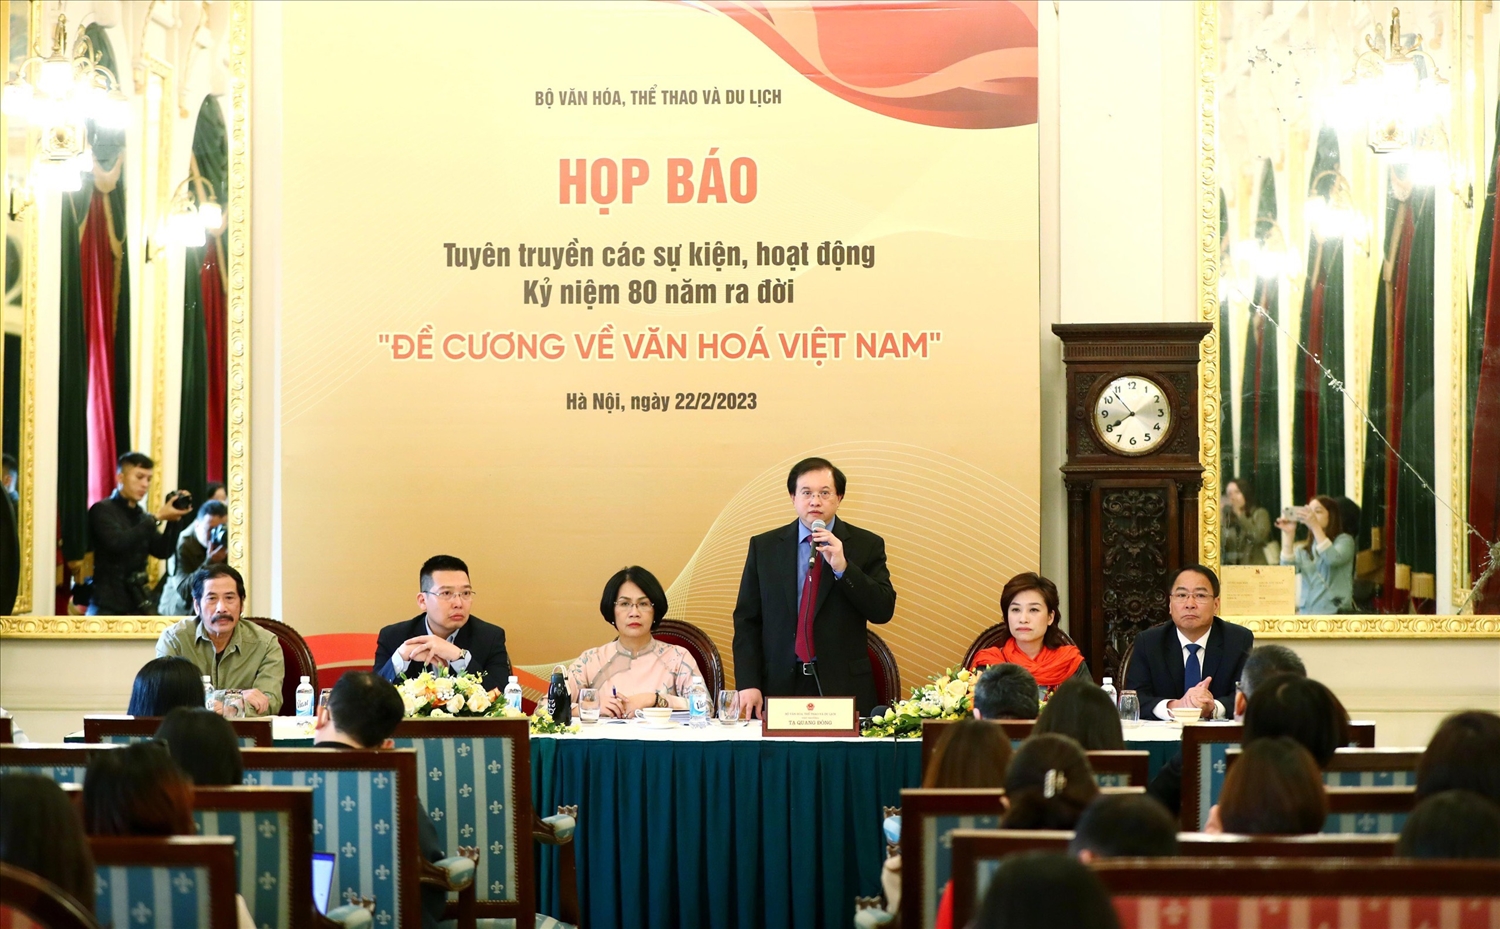 Họp báo tuyên truyền các hoạt động Kỷ niệm 80 năm ra đời “Đề cương văn hóa Việt Nam” diễn ra vào sáng ngày 22/2